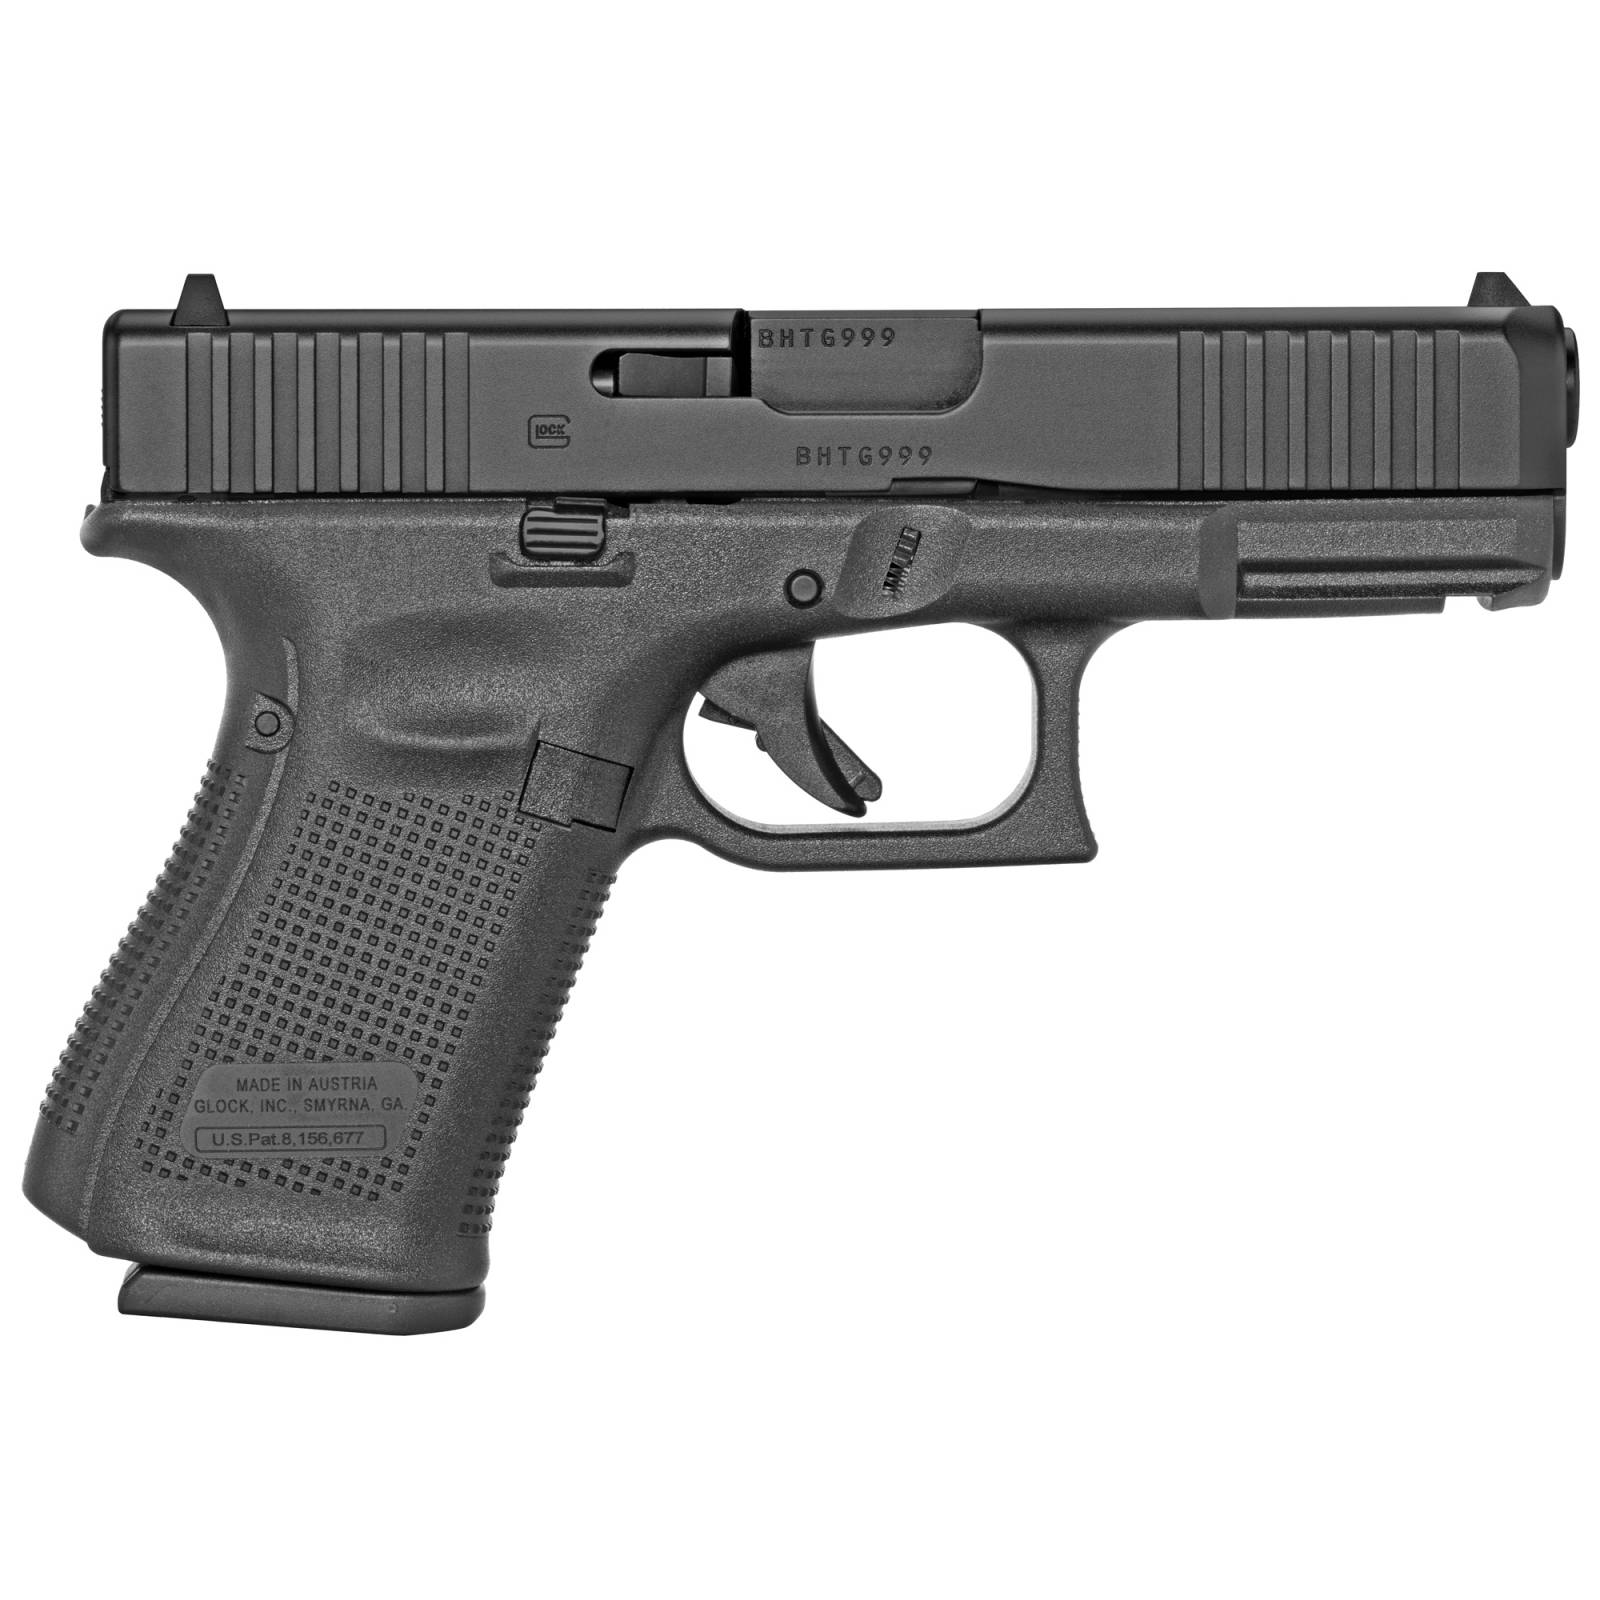 Glock 19 G19 Gen 5 9mm 4.02in Barrel 15+1 Round Capacity